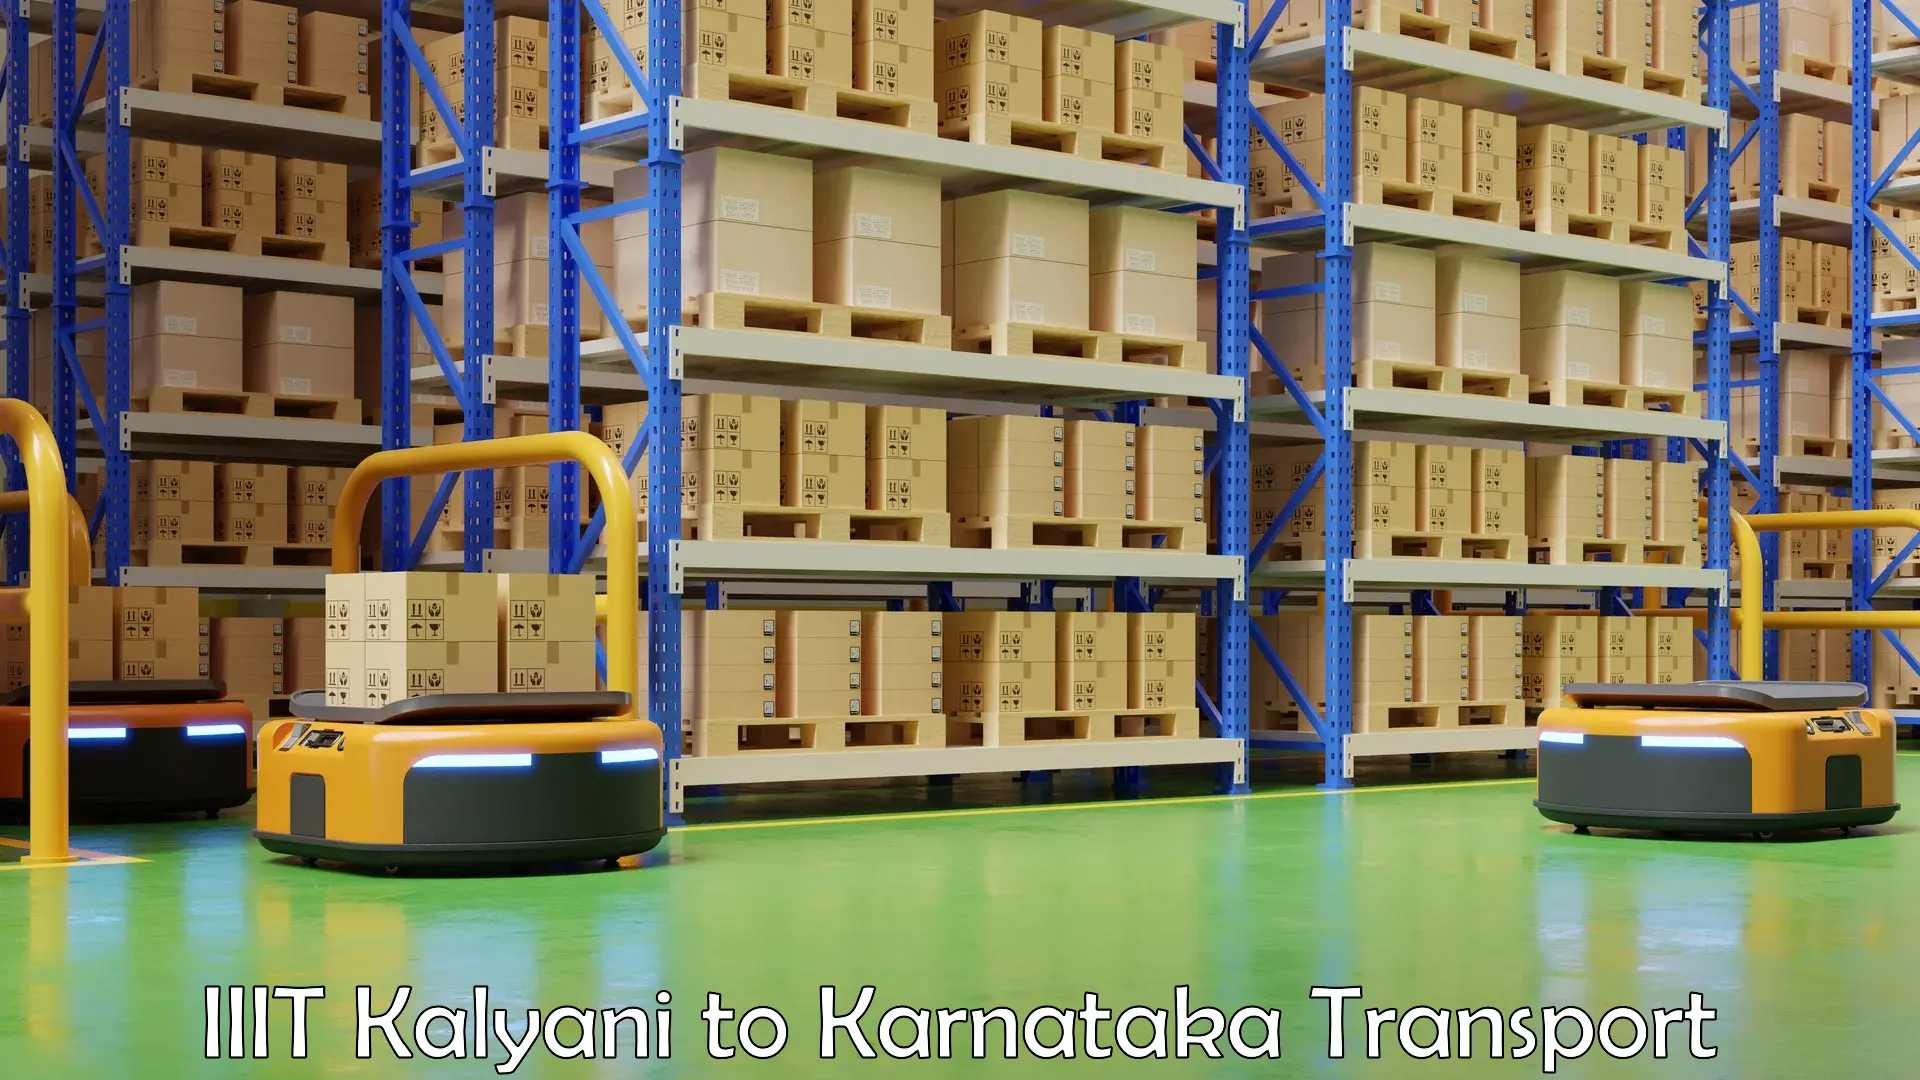 Online transport service IIIT Kalyani to Kanjarakatte